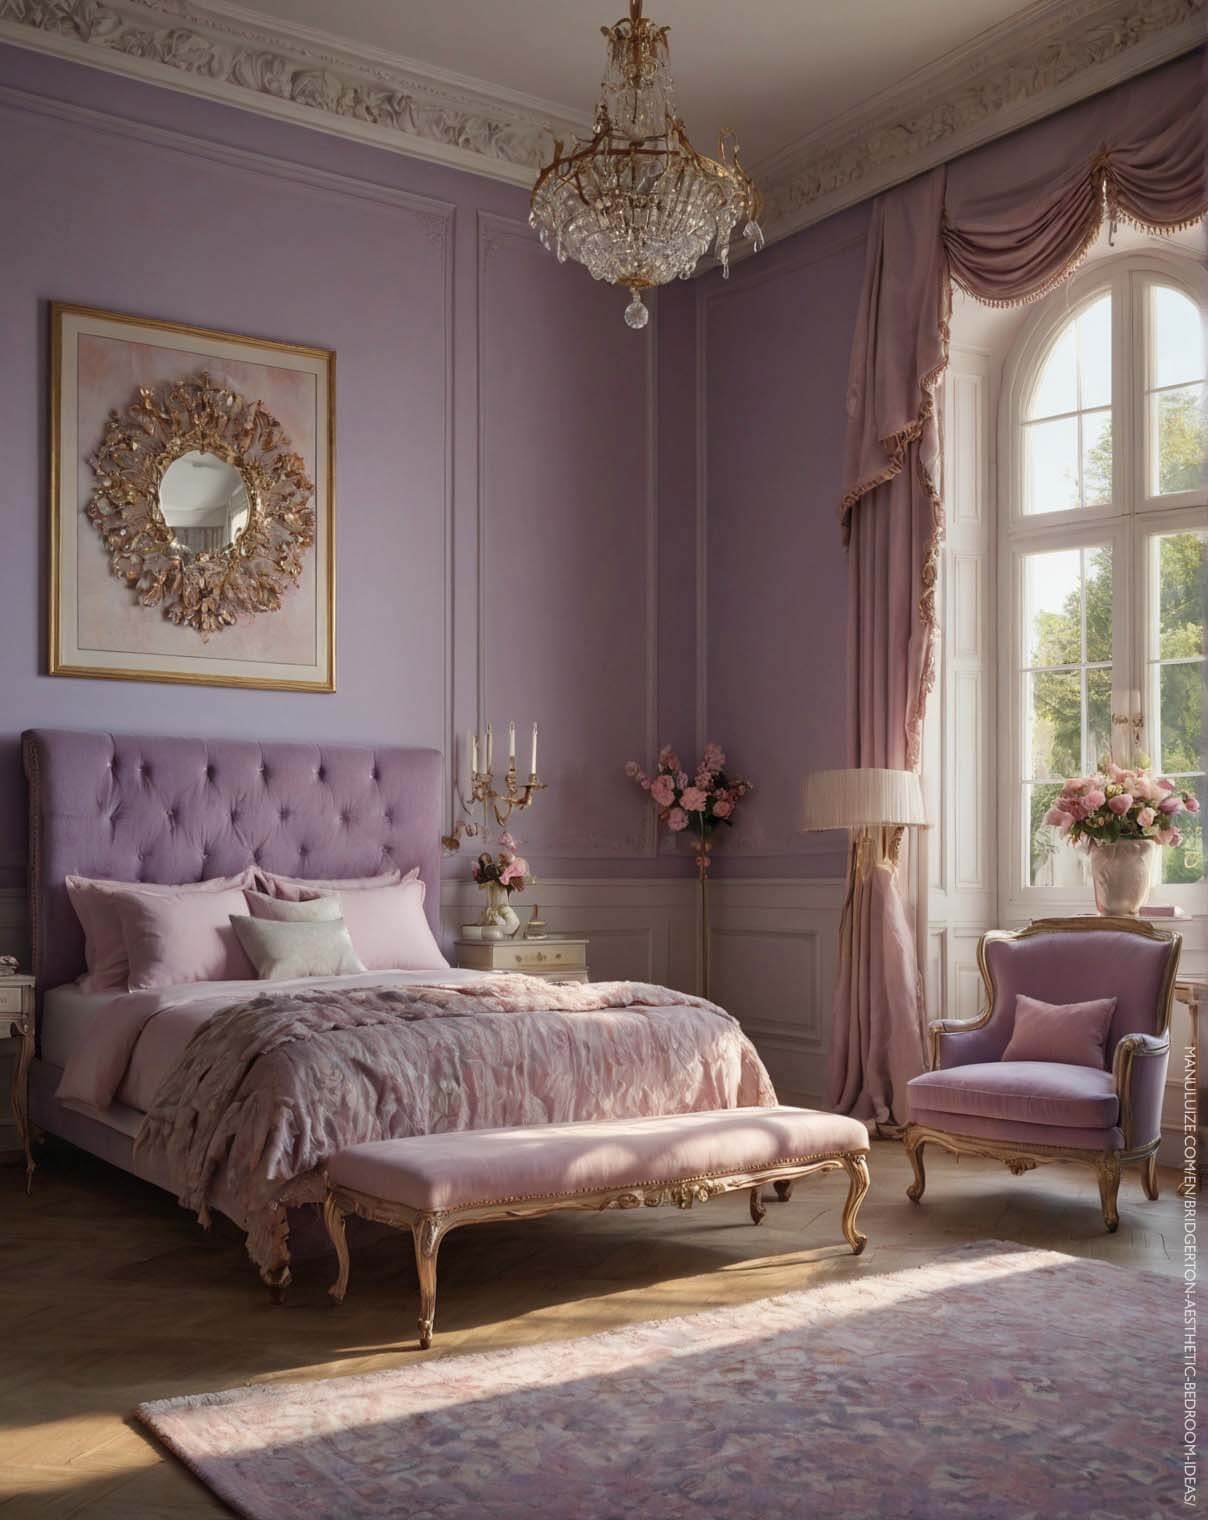 Decorative mirror in a lilac Regency core bedroom